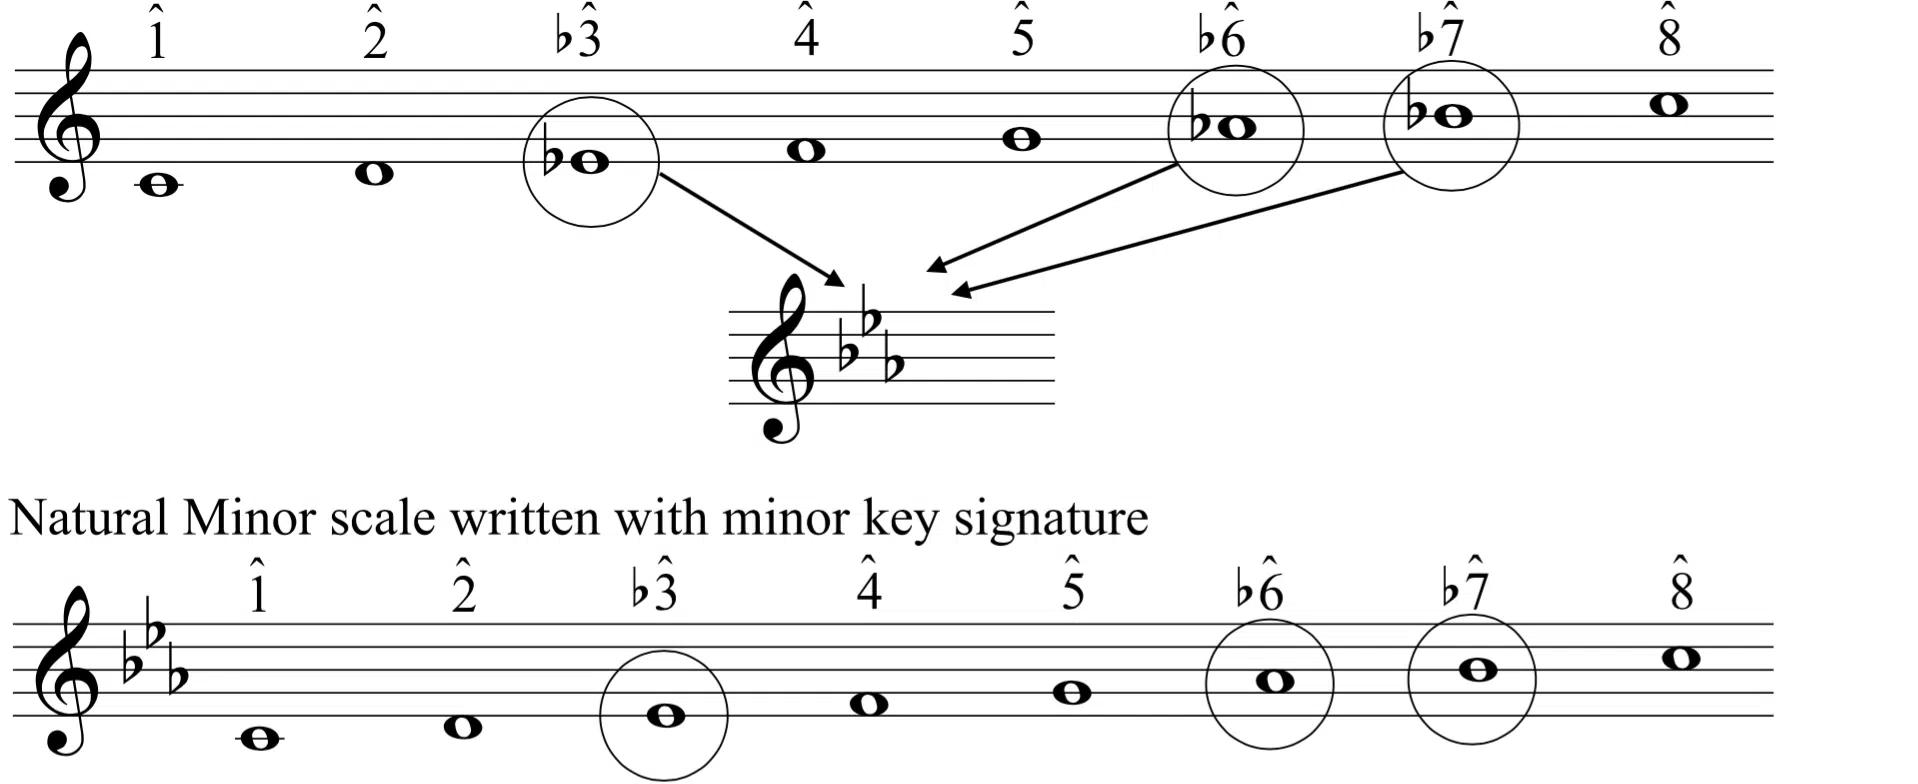 Minor Key Signatures - Unison